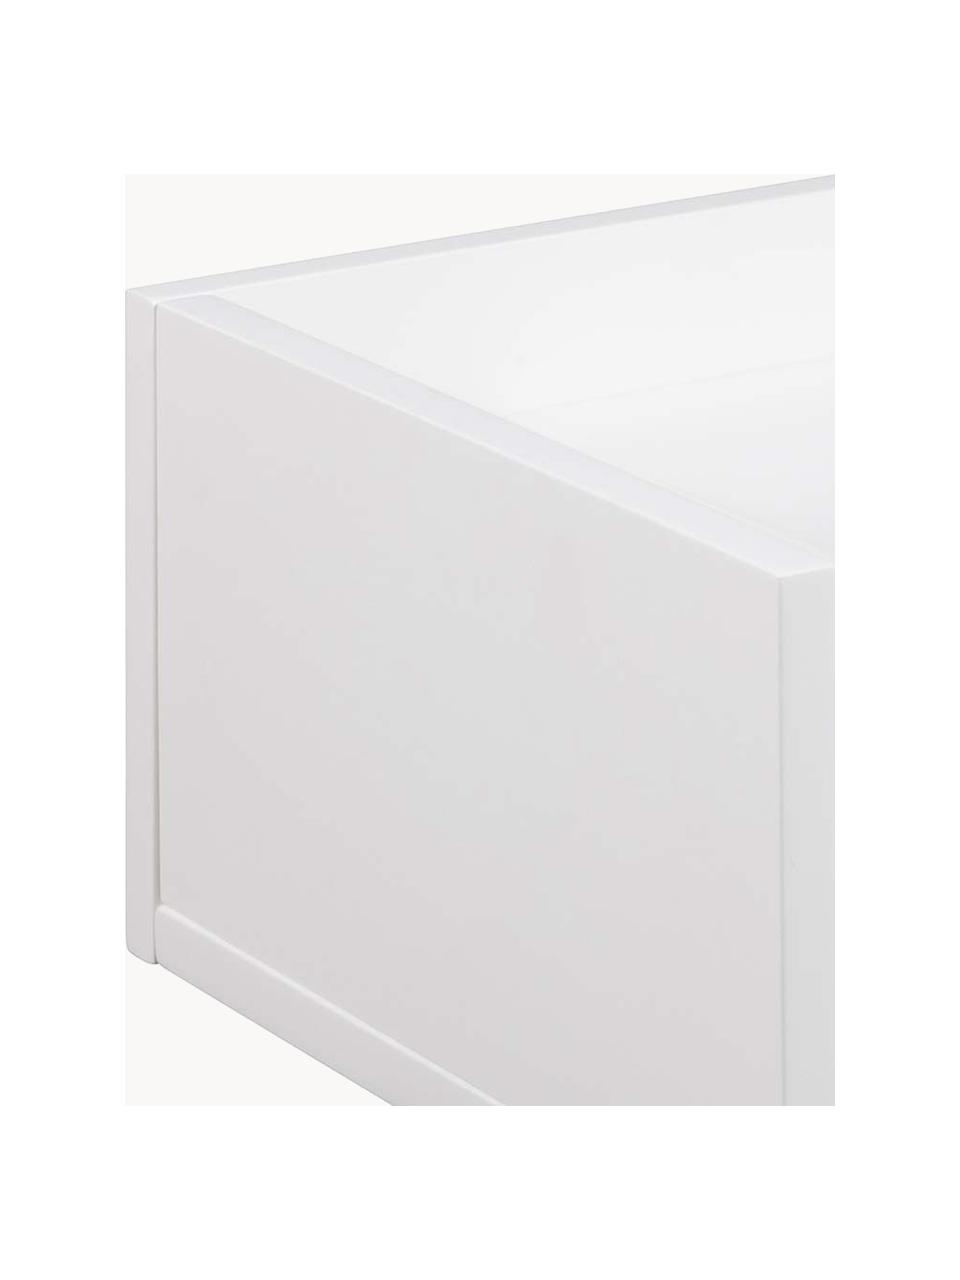 Wand-Nachttisch Ashlan mit Schublade, Mitteldichte Holzfaserplatte (MDF), lackiert, Weiß, B 40 x H 17 cm